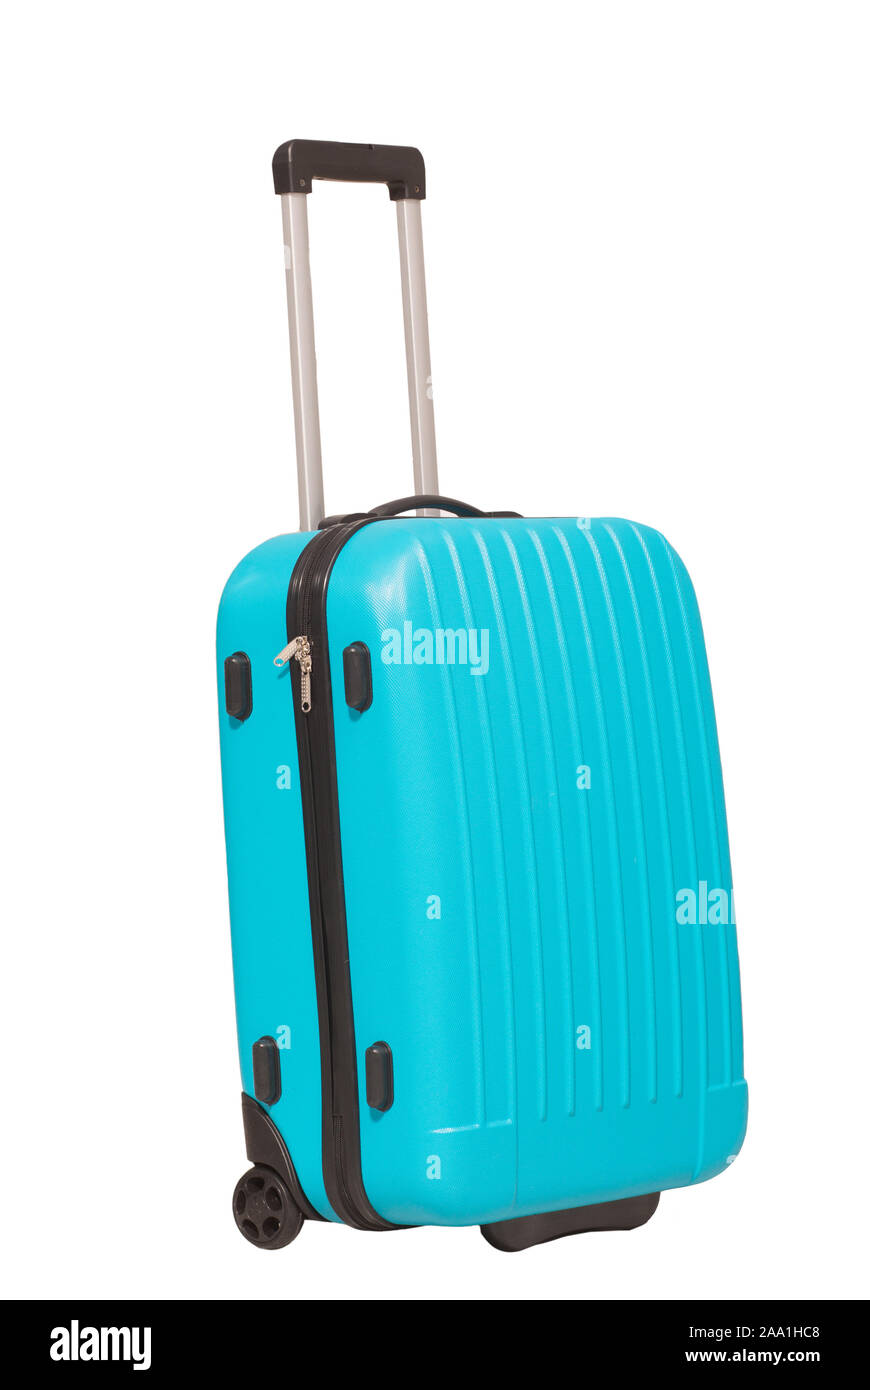 Suitcase isolated on white background. Stock Photo